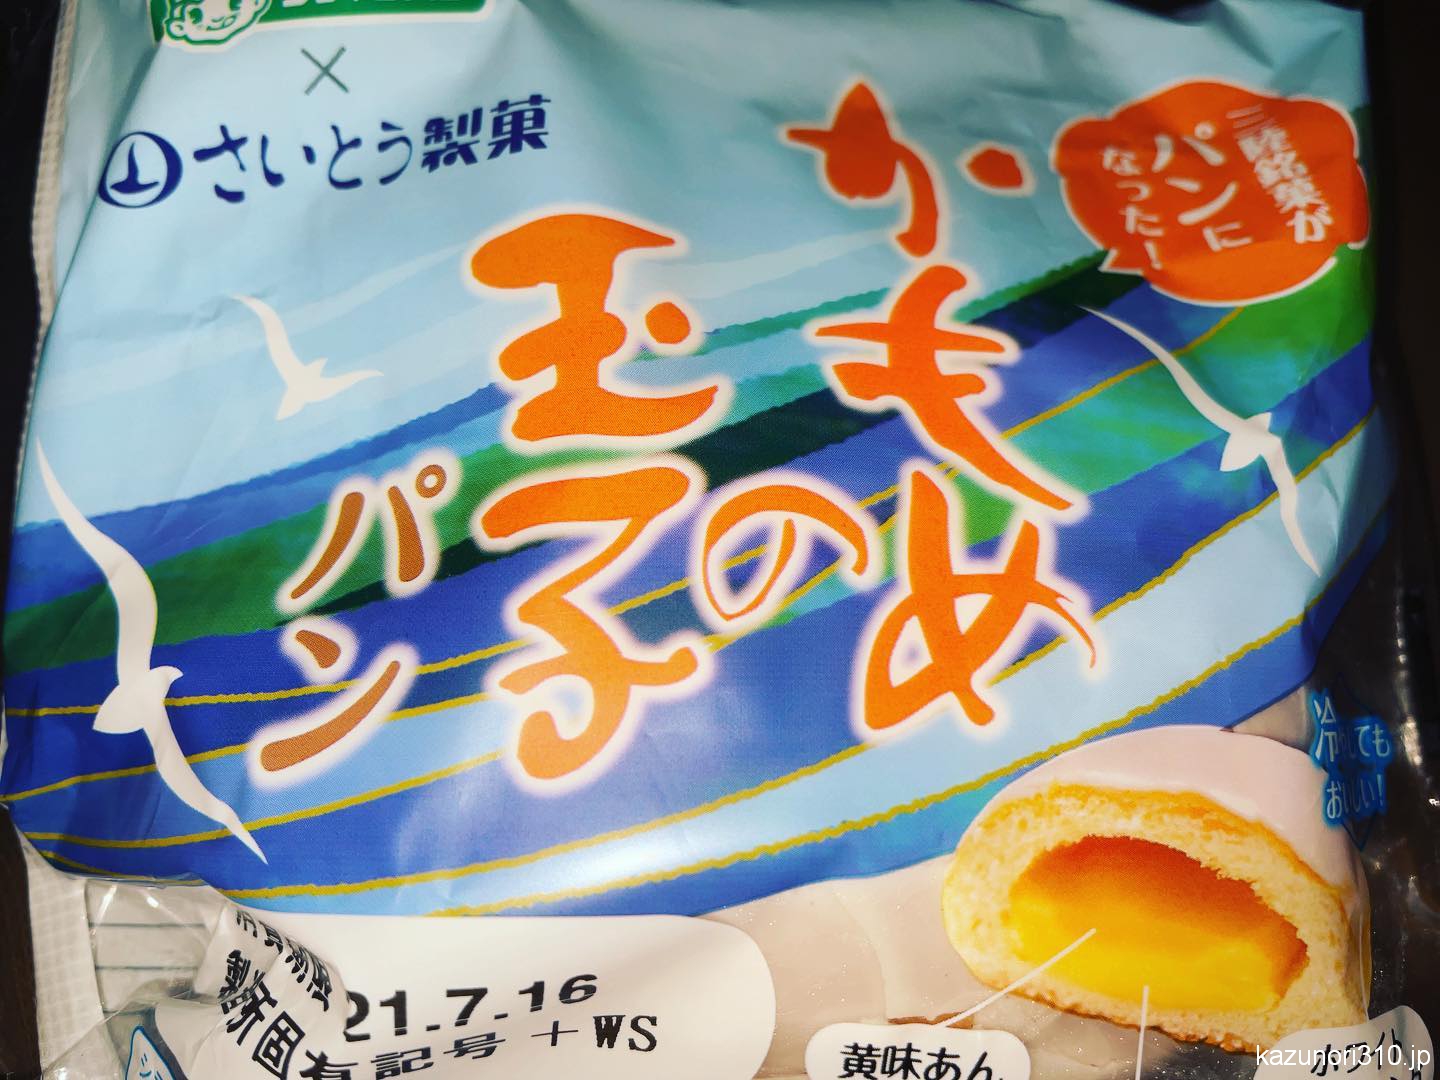 #かもめの玉子 #パン #シライシパン #さいとう製菓